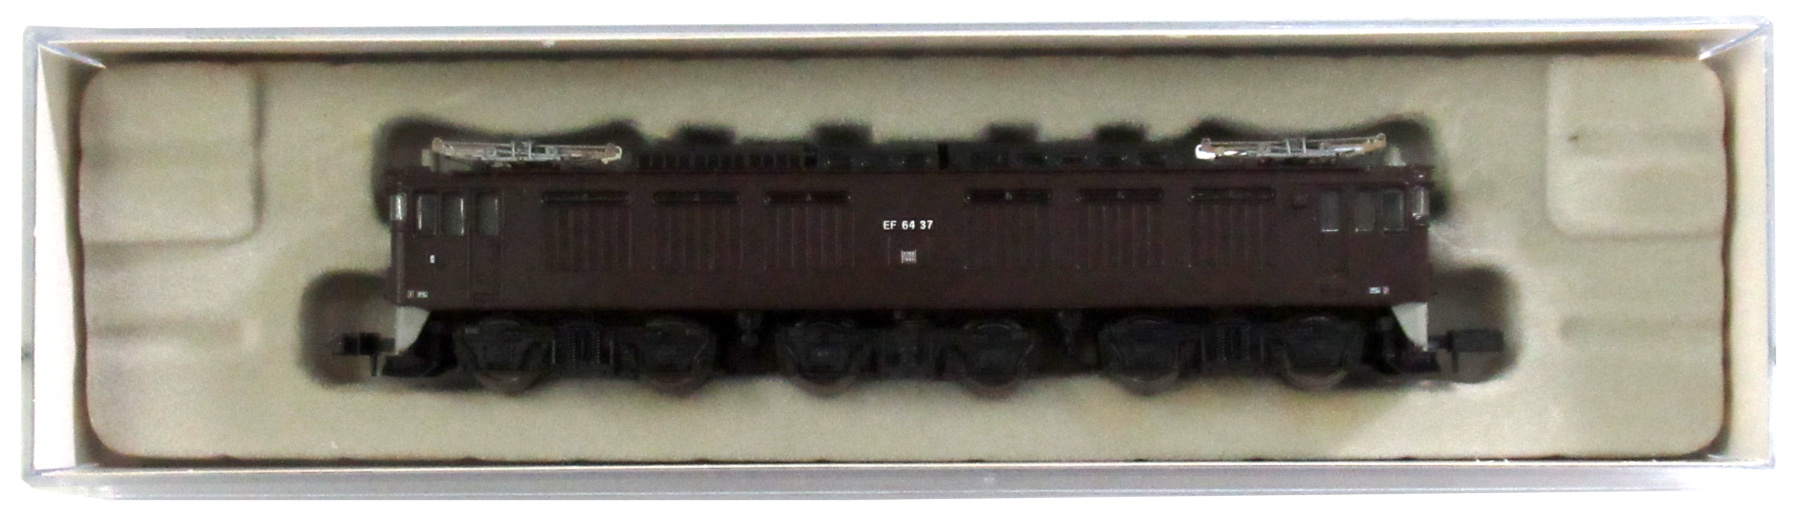 公式]鉄道模型(JR・国鉄 形式別(N)、電気機関車、EF64)カテゴリ 